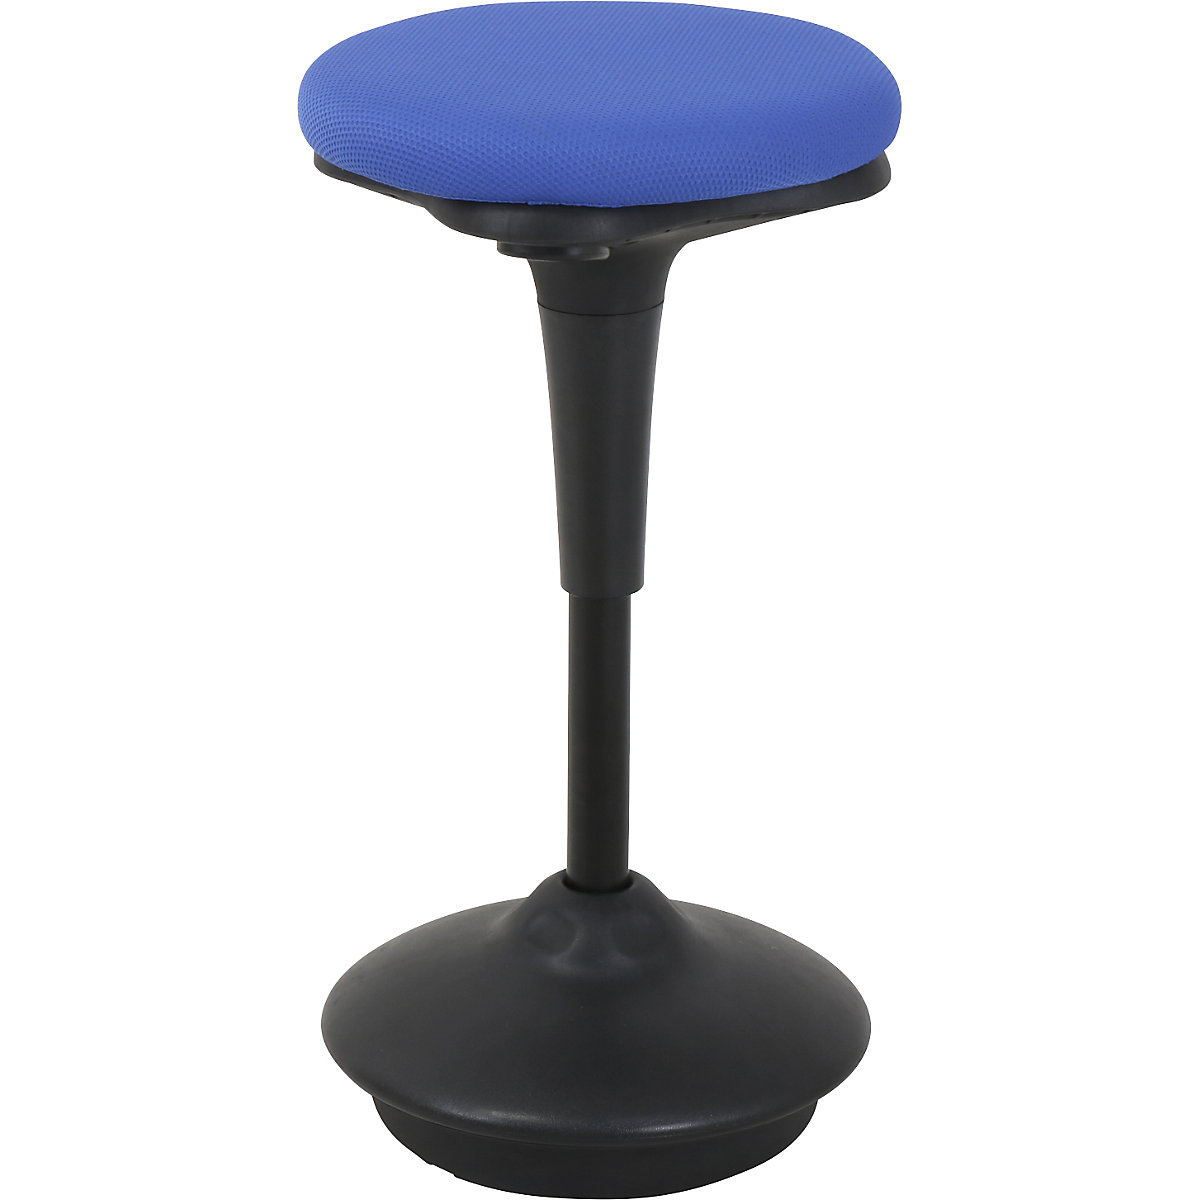 Visoka stolica 6131 – Twinco, okruglo sjedalo Ø 340 mm, presvlaka u plavoj boji-6